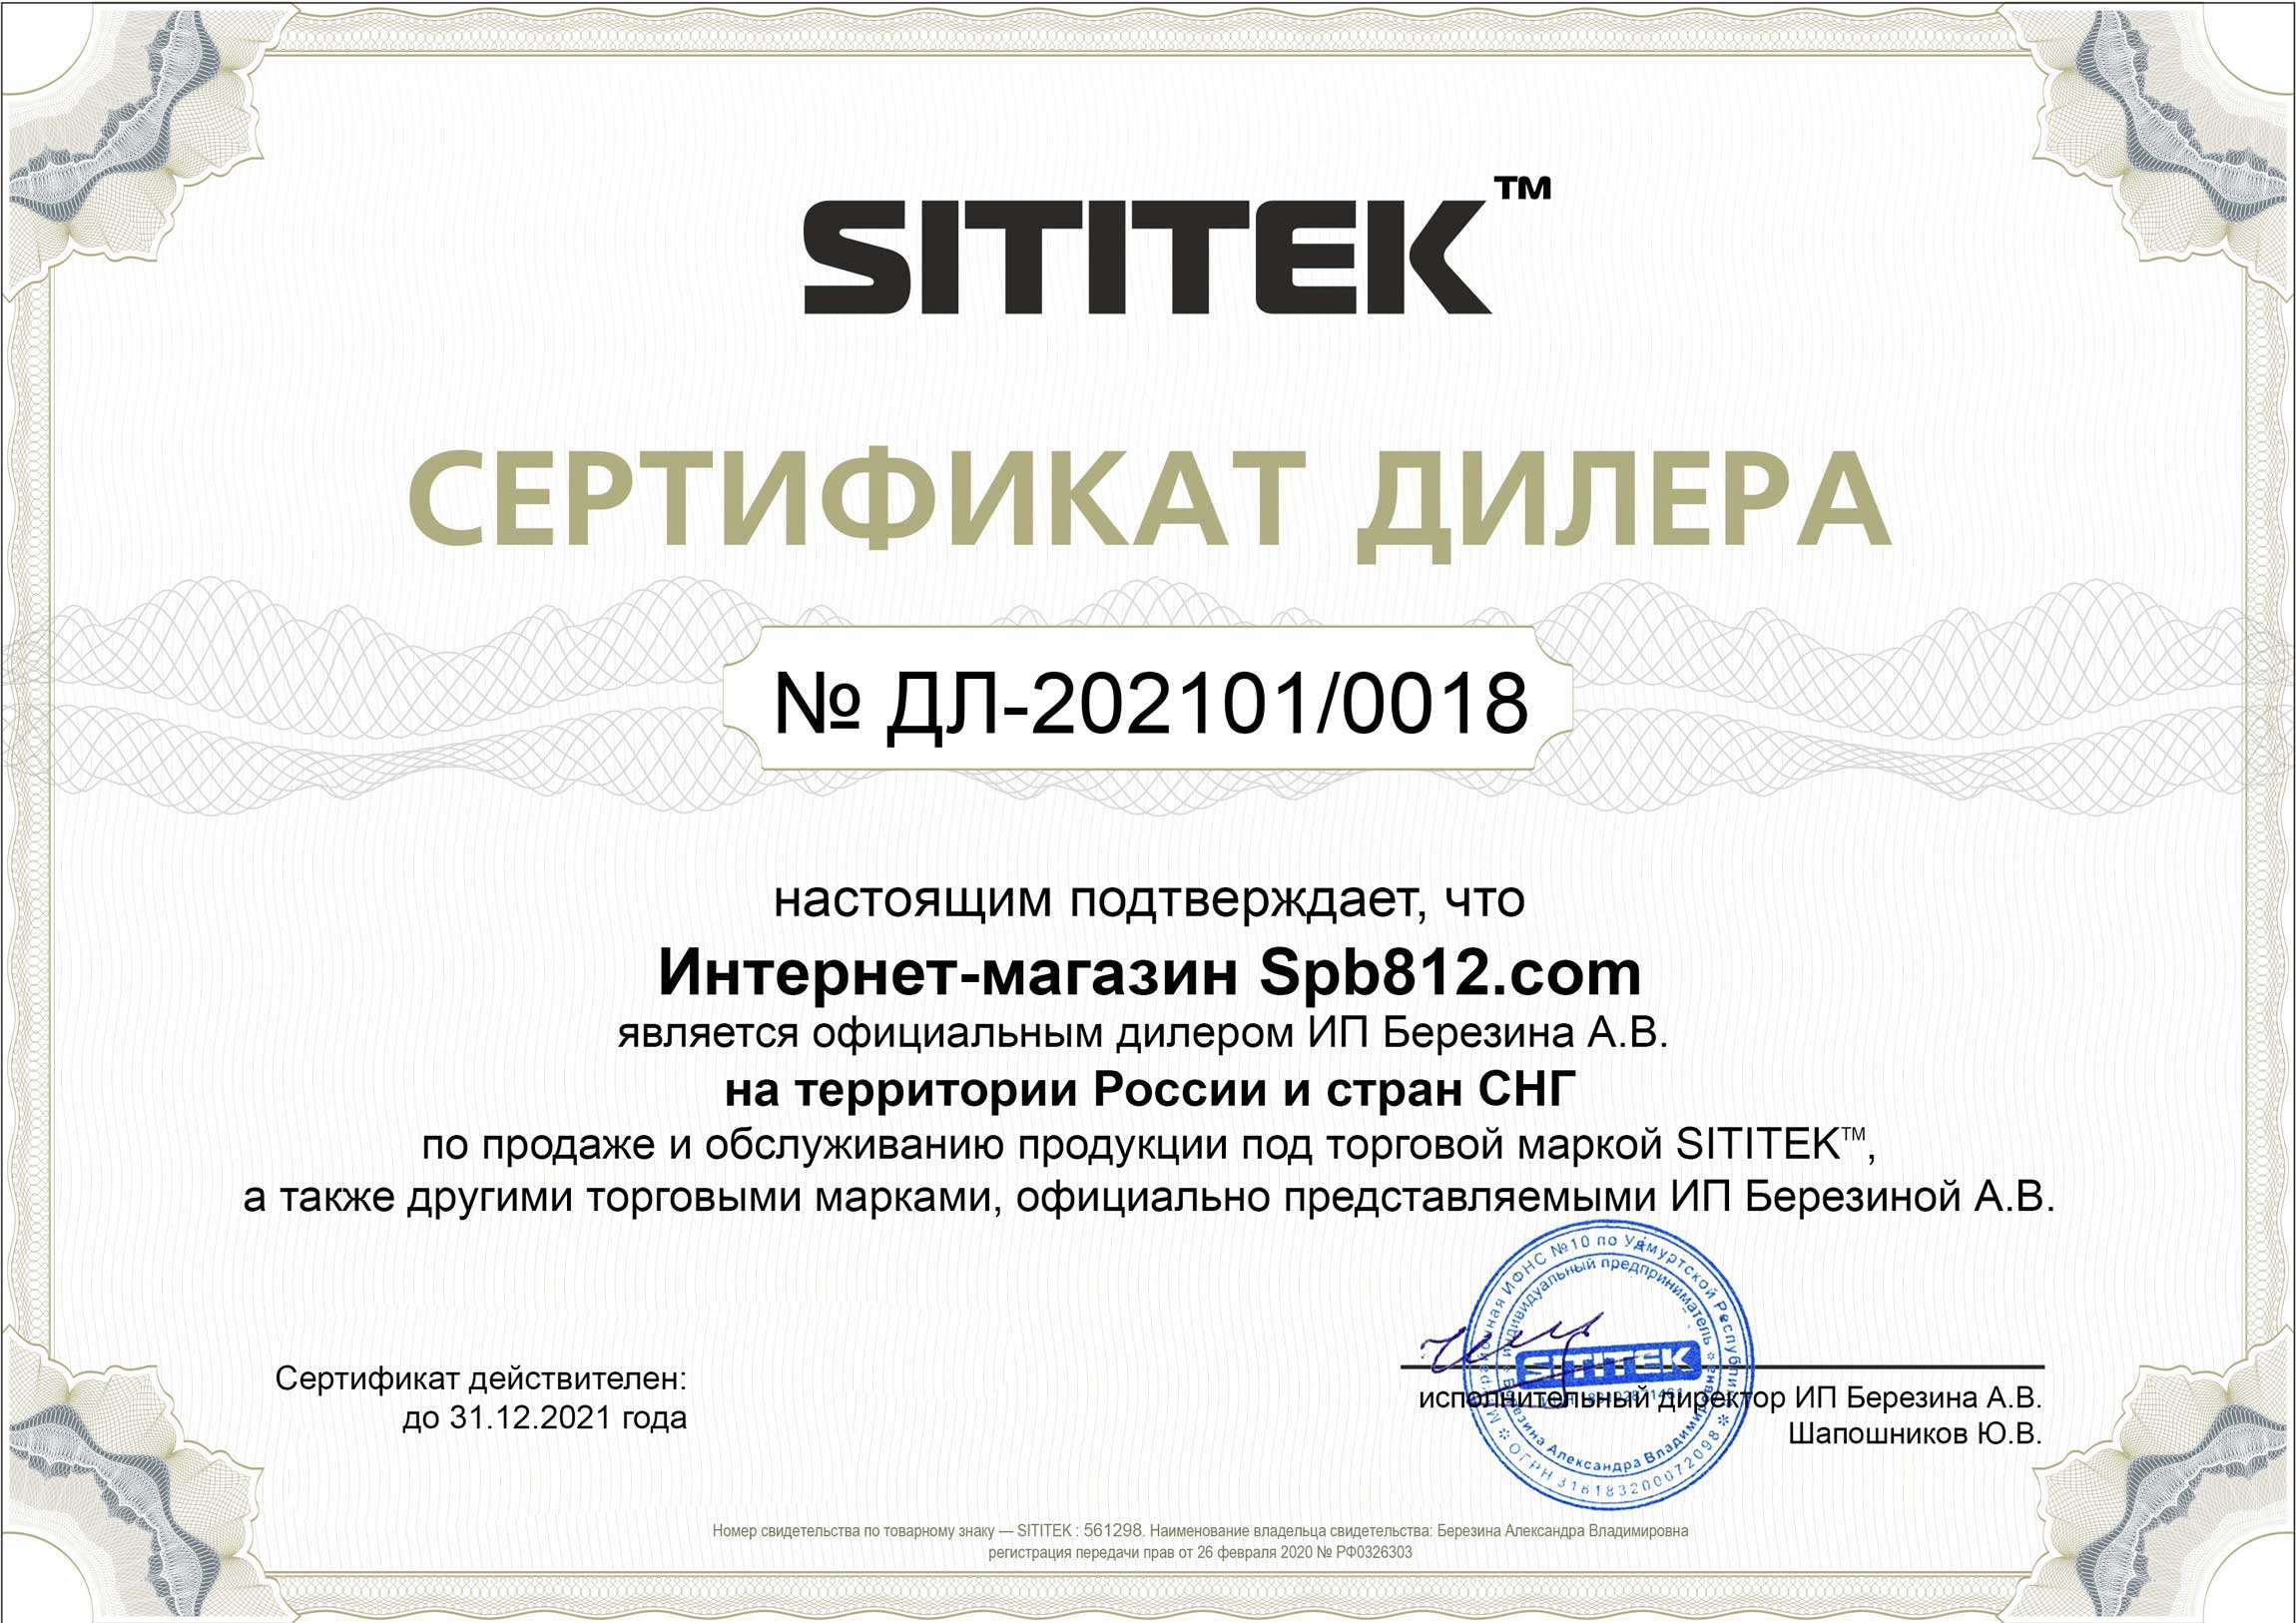 Наш магазин является официальным дистрибьютором товаров SITITEK и имеет соответствующий сертификат (нажмите для увеличения)